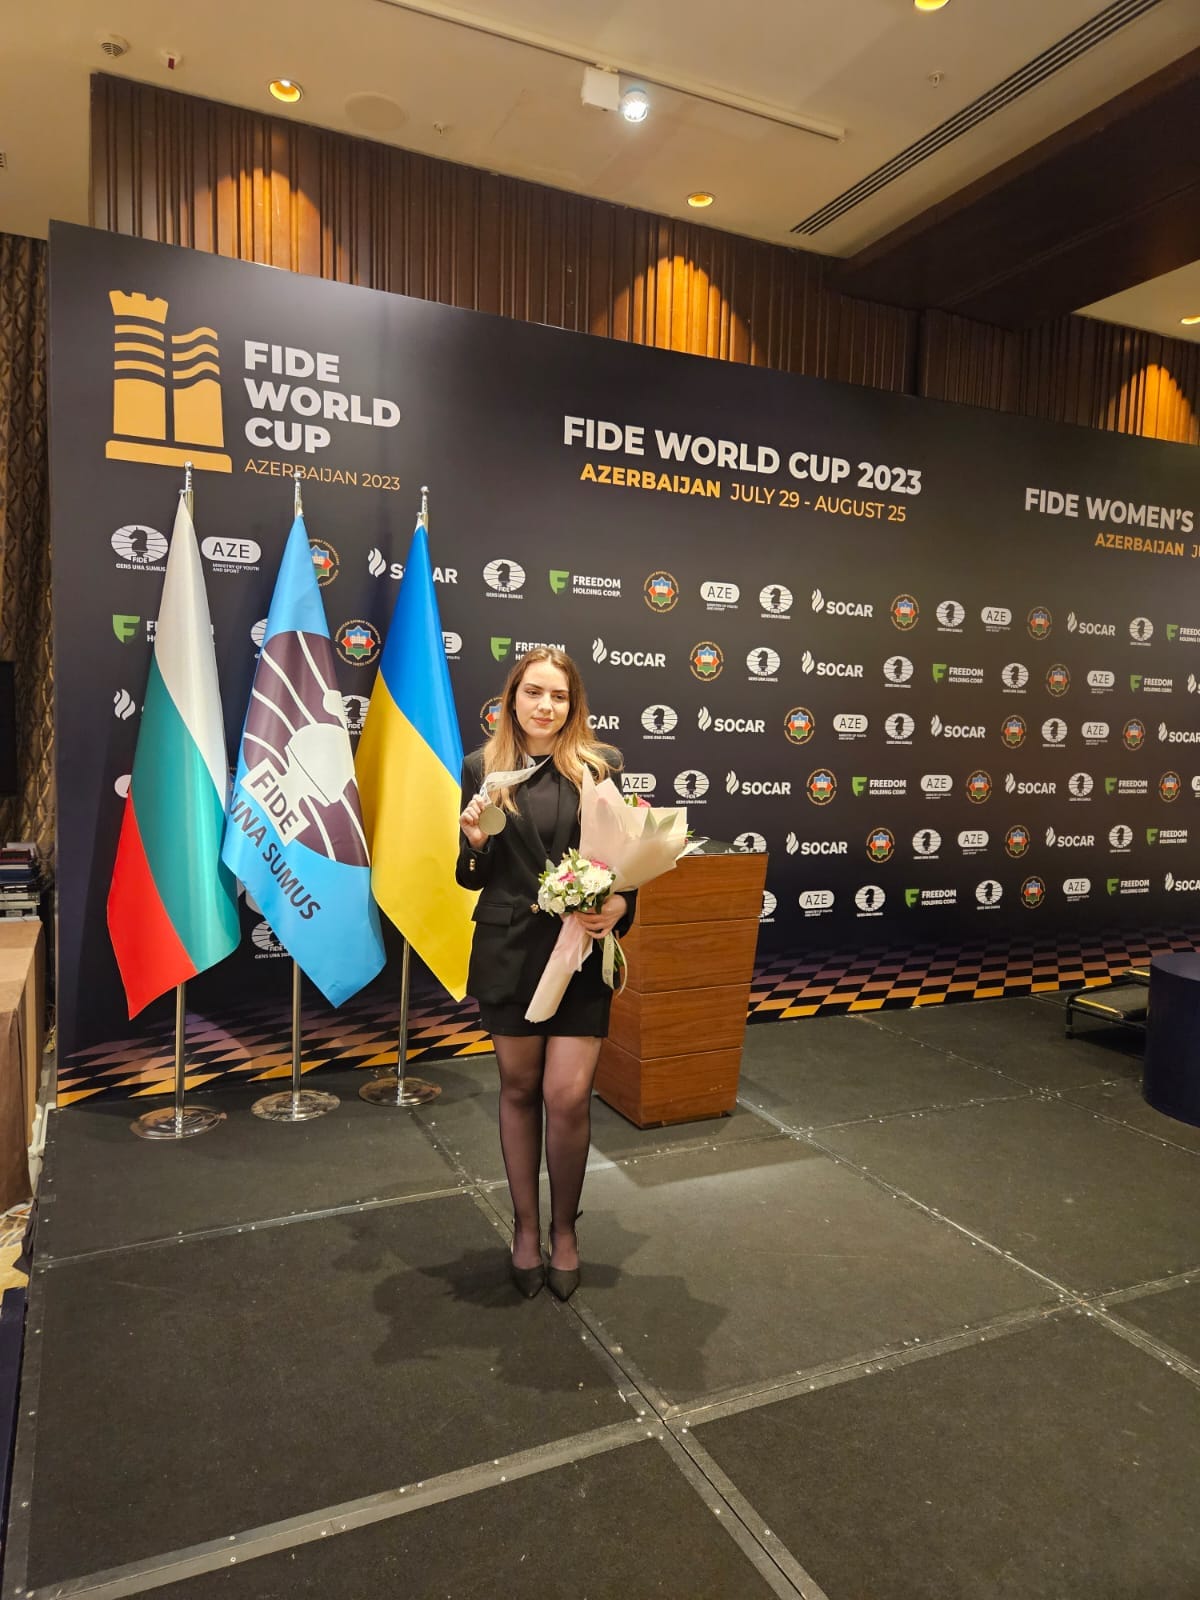 Българската шахматистка Нургюл Салимова с исторически успех за България в Баку